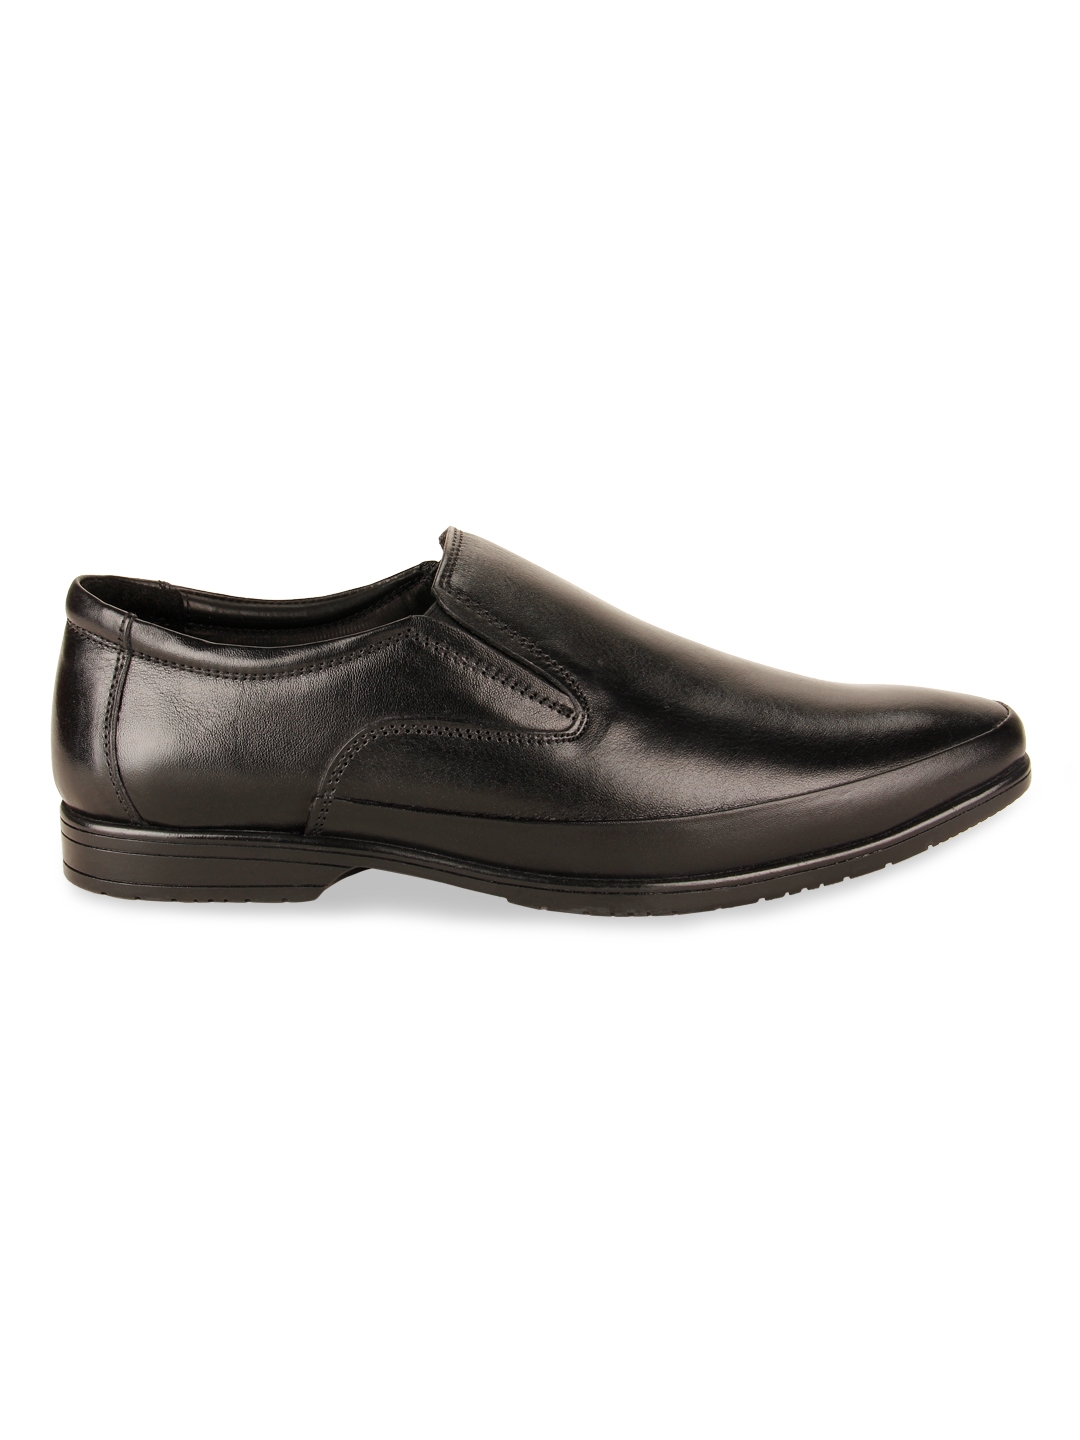 Regal | Men Leather Formal Slip Ons